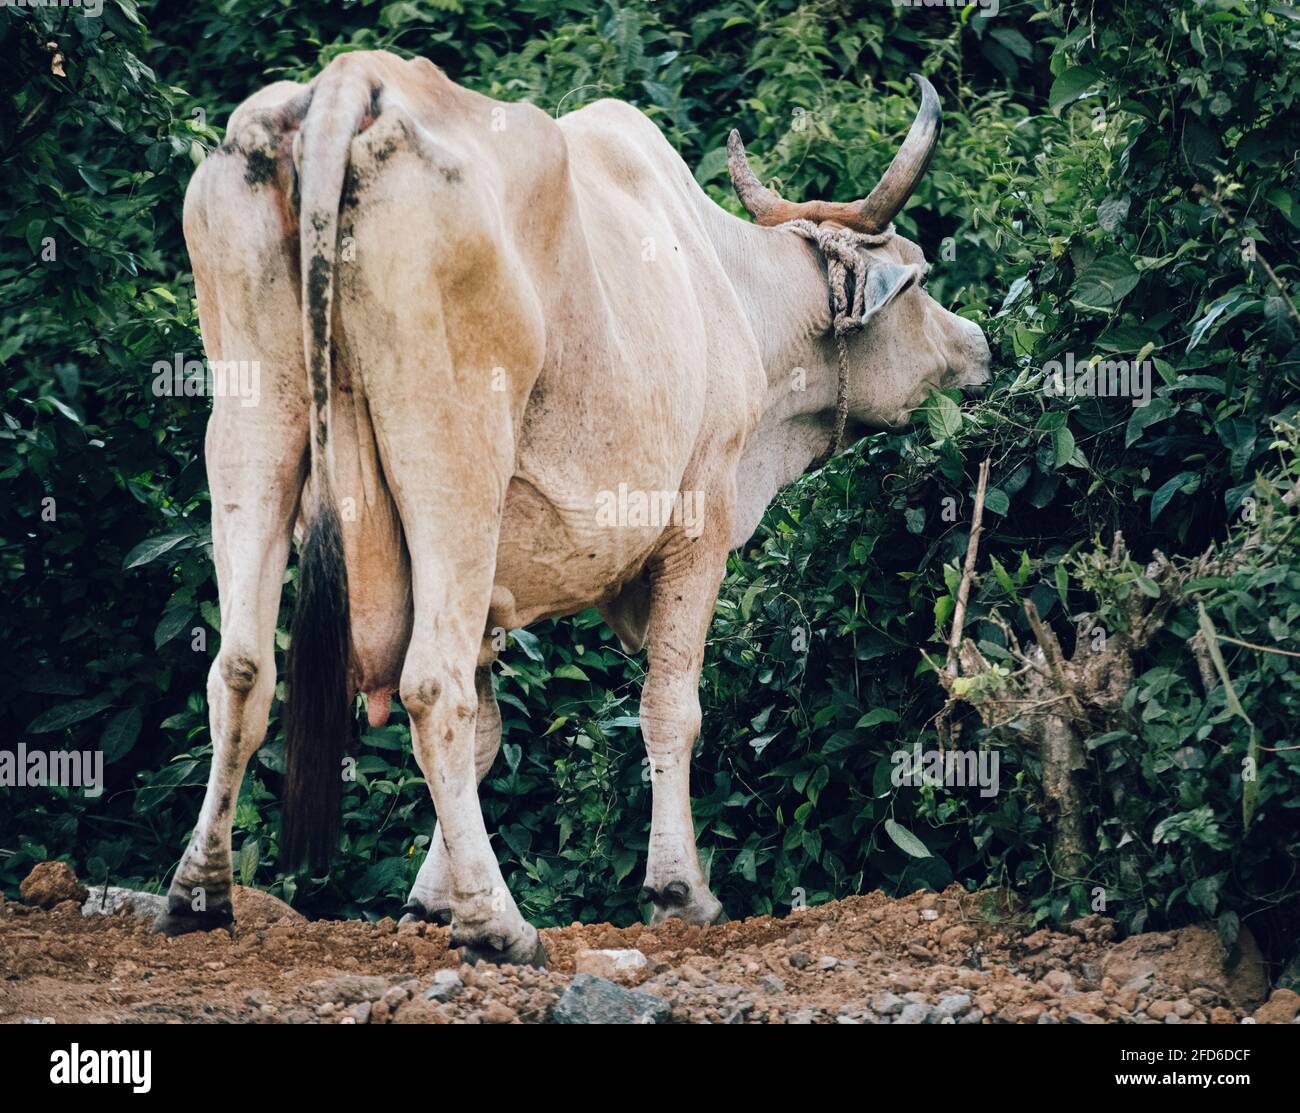 Vaca comiendo hojas en el lado de un camino, se topa con cuernos grandes y mostrando sus glúteos feos. Foto de stock